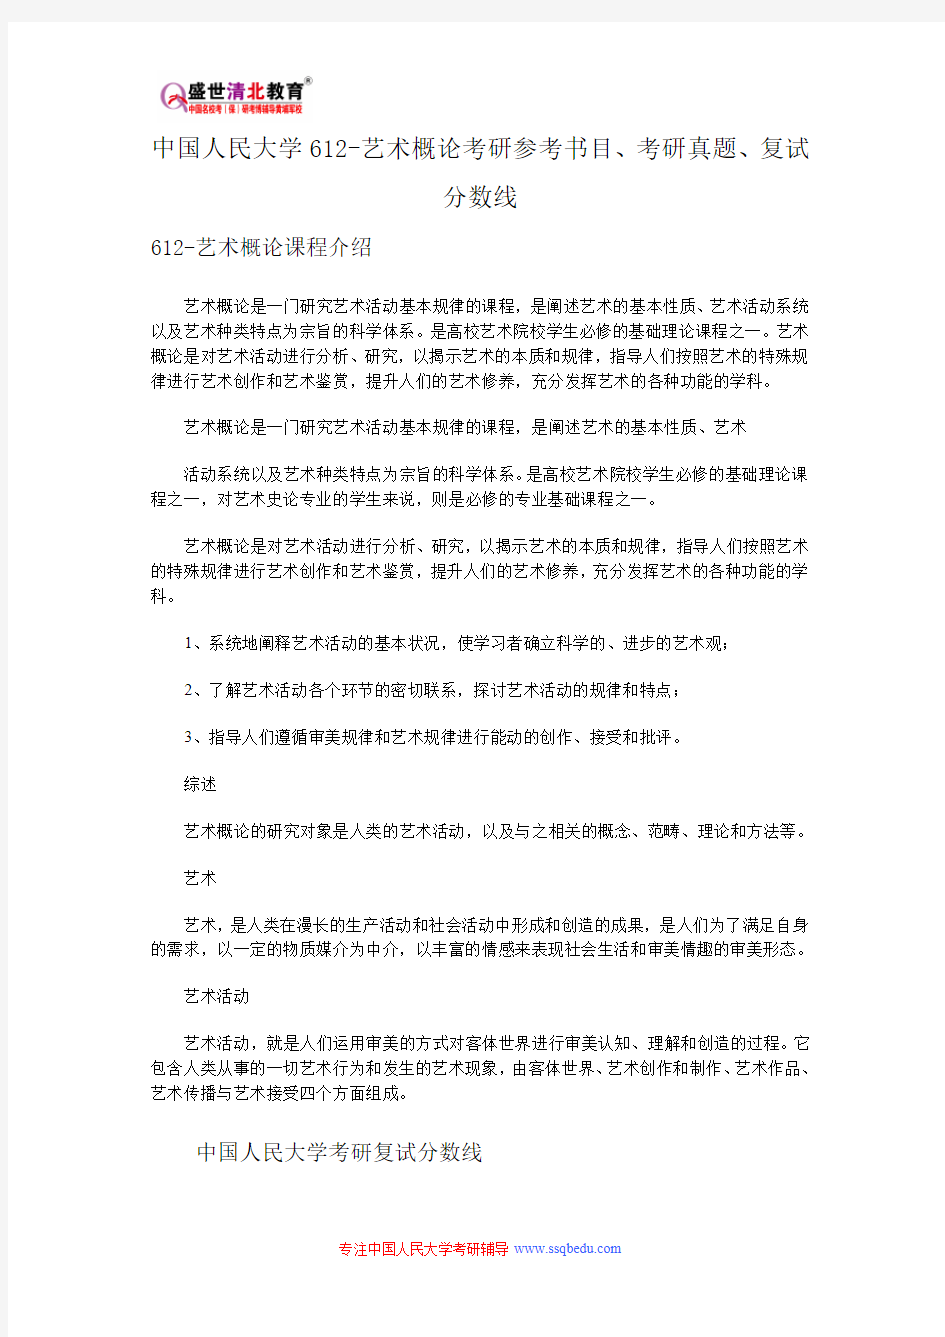 中国人民大学612-艺术概论概要考研参考书目、考研真题、复试分数线